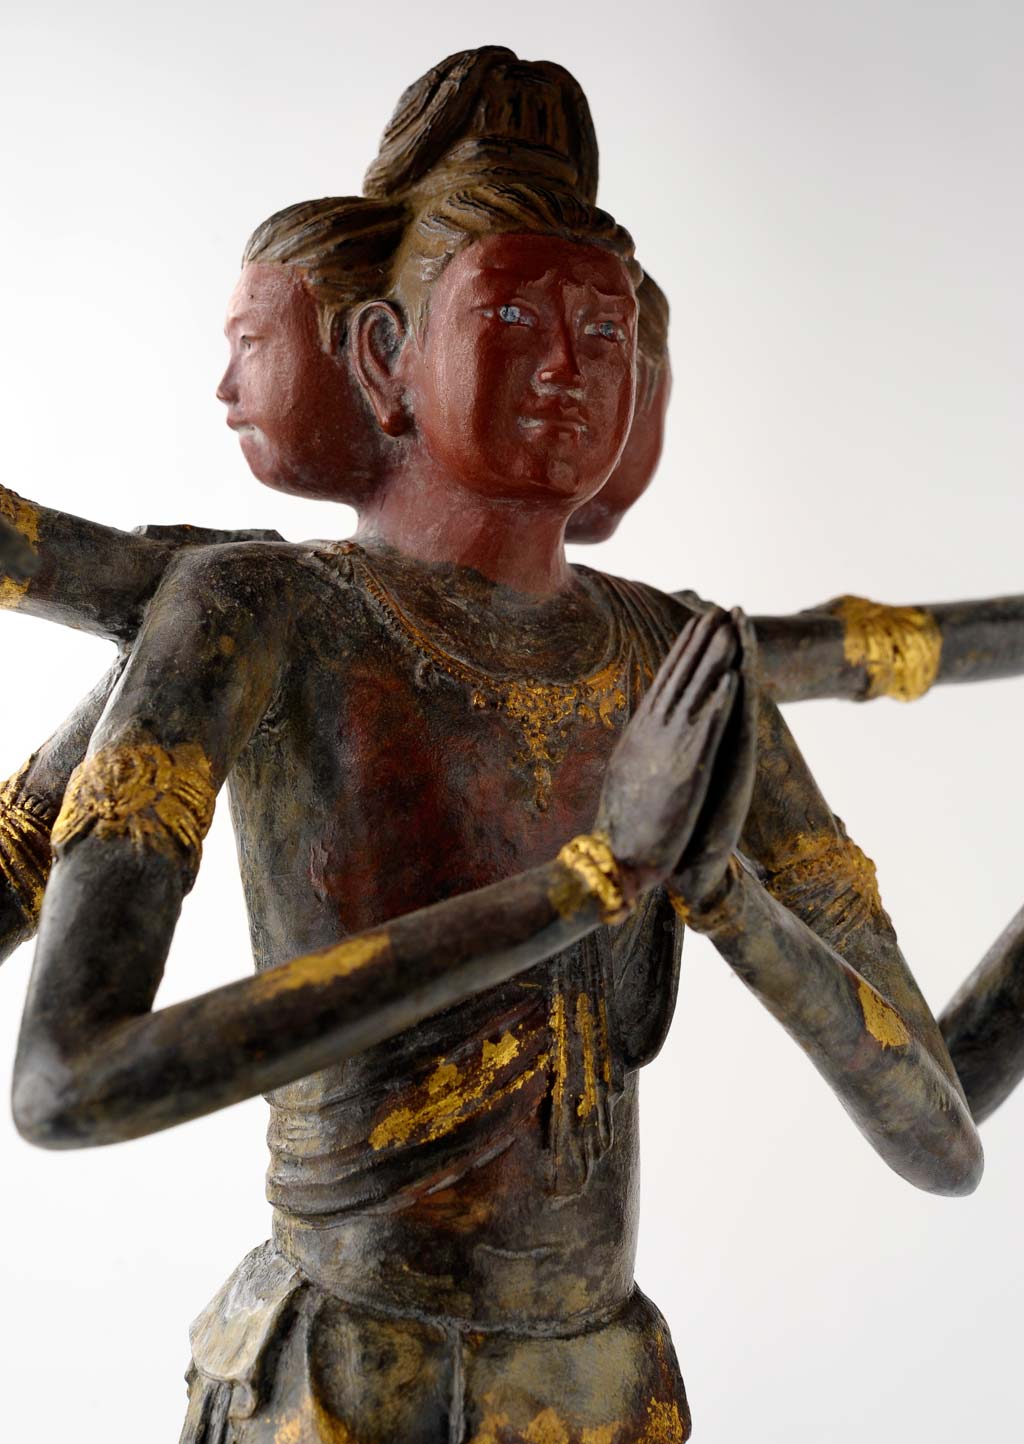 喜多敏勝 原型 仏像 保証書付 ブロンズ像 彫刻 阿修羅像 仏教美術 蝋型鋳銅製